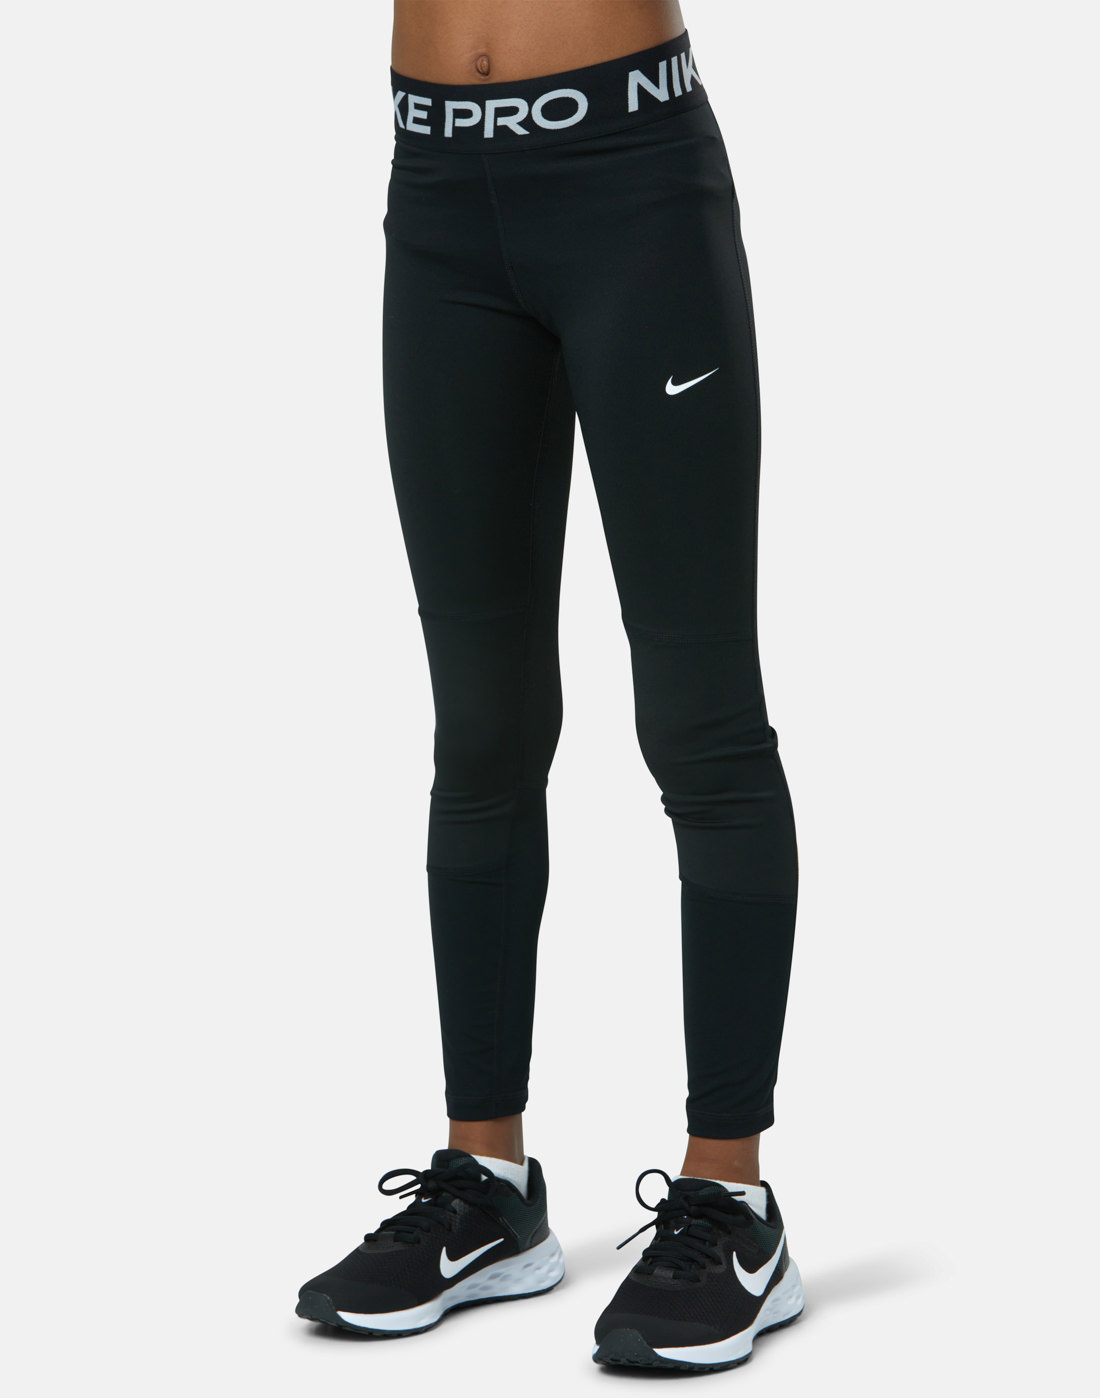 Nike Older Girls Pro Leggings - Black